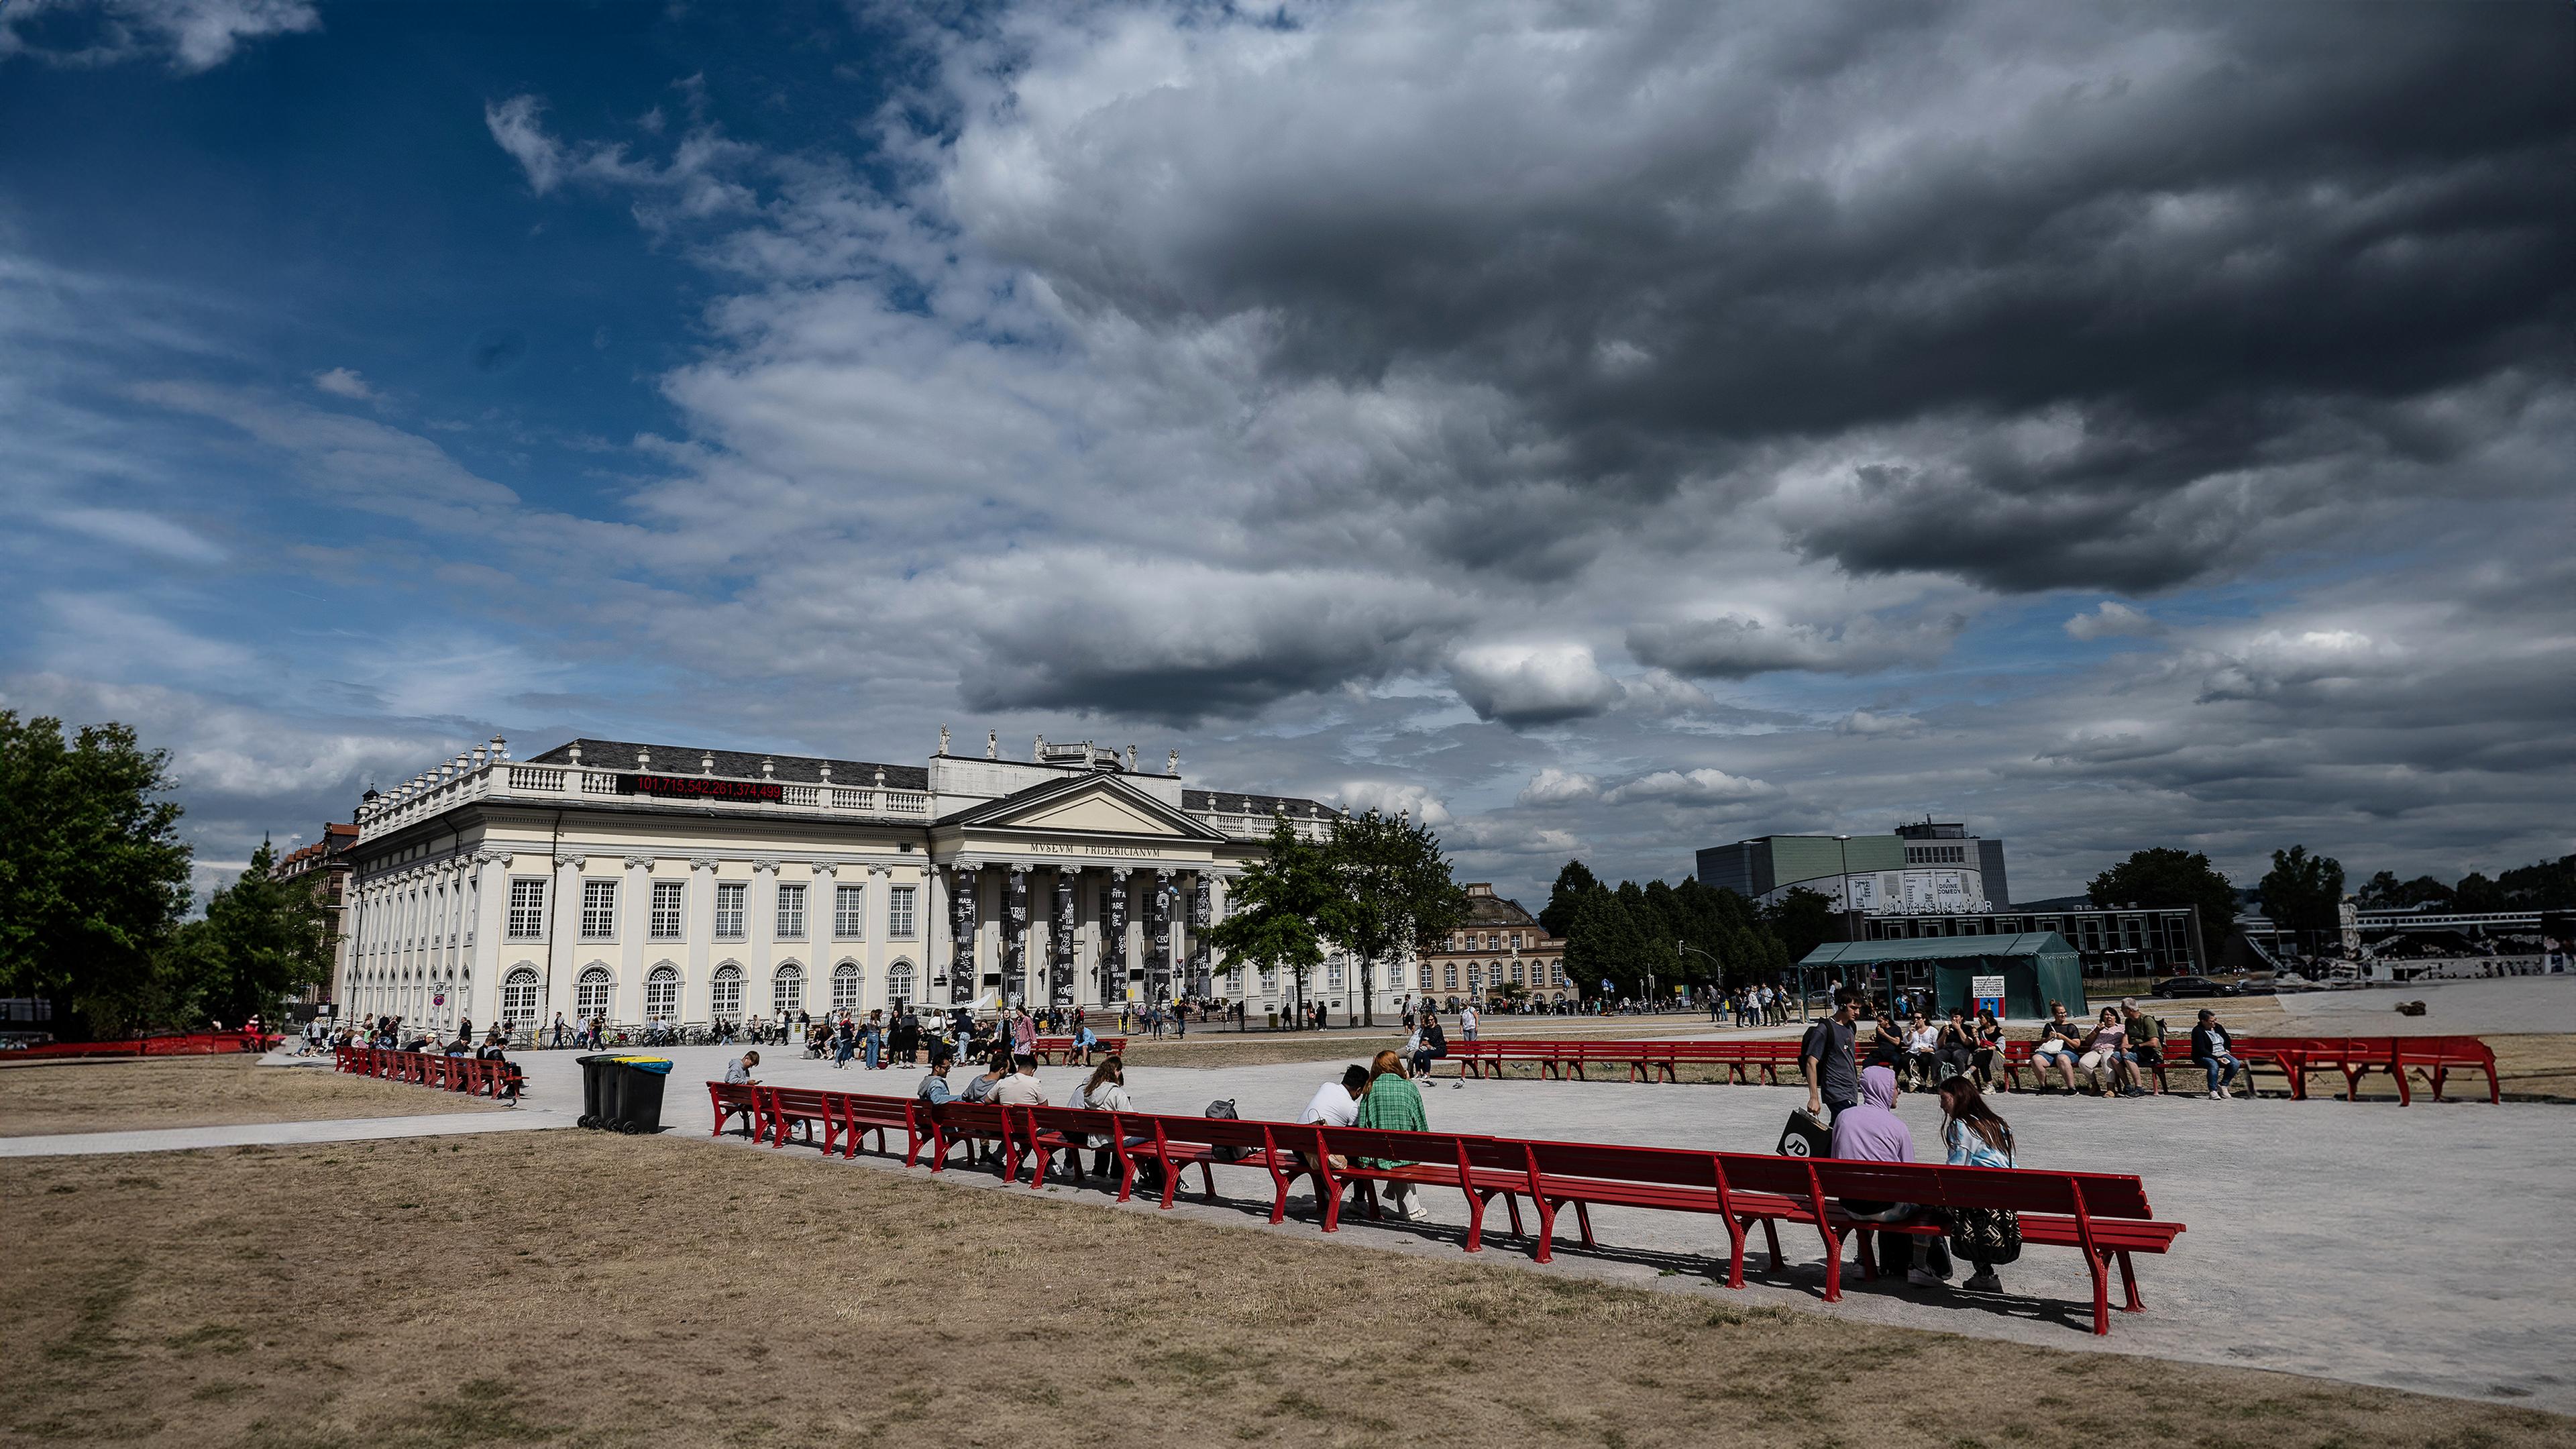 Über dem historischen Gebäude des Museum Fridericianum in Kassel ballen sich dunkle Wolken. Im Park davor sind Spaziergänger unterwegs.